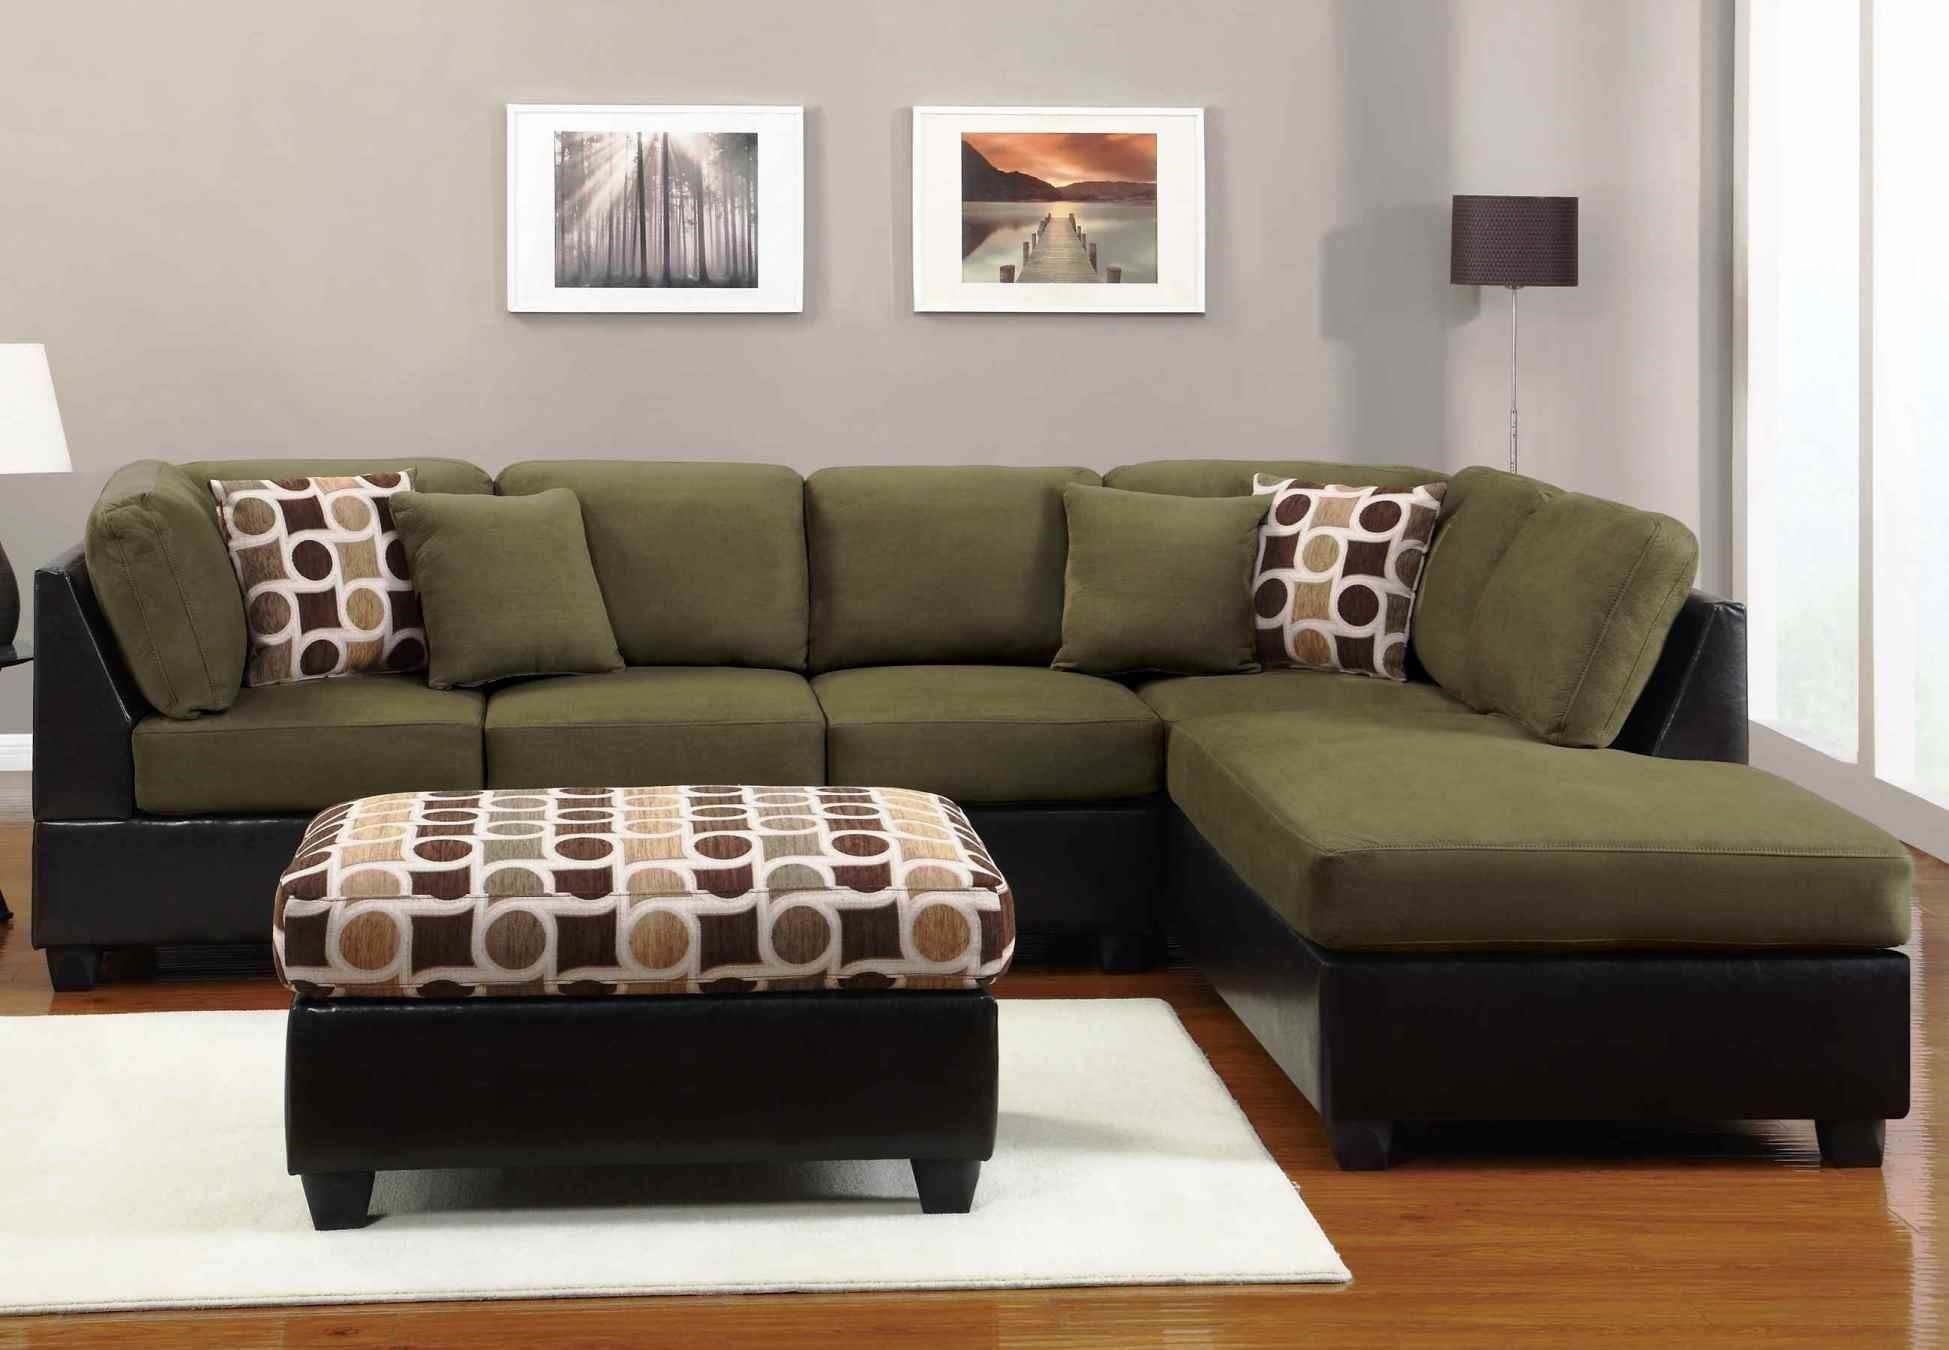 Dưới đây là danh sách 15 mẫu bàn ghế gỗ phù hợp cho phòng khách nhỏ, vừa đẹp vừa tiện lợi.